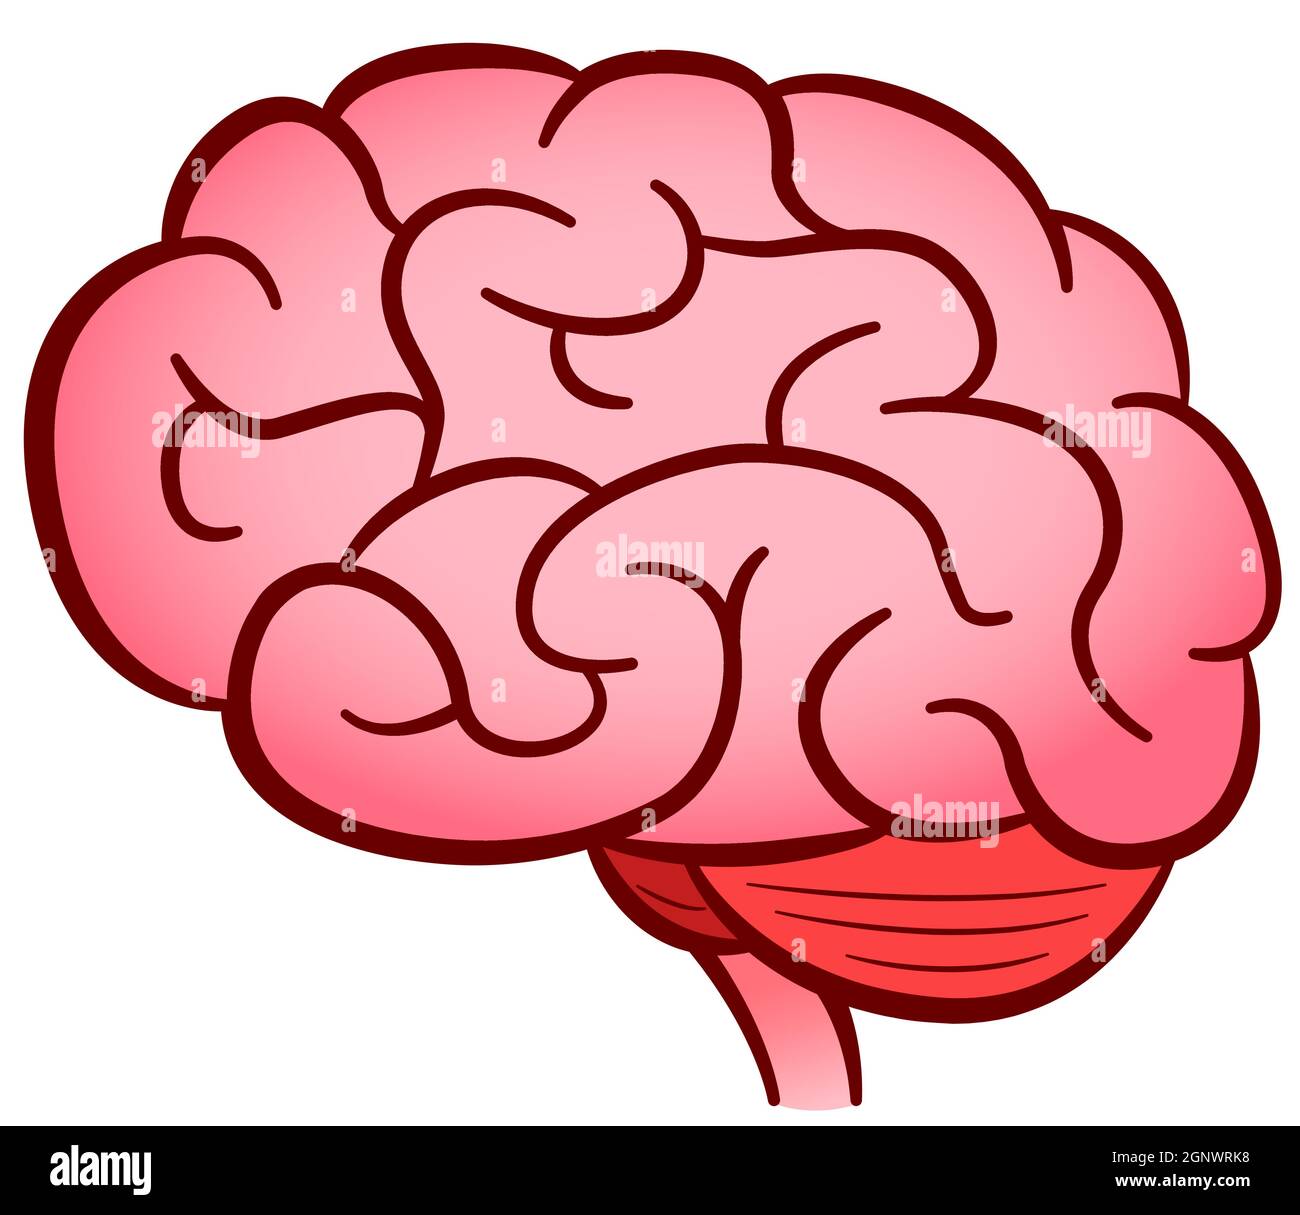 Vektor menschliches Gehirn isoliertes Design Stock Vektor